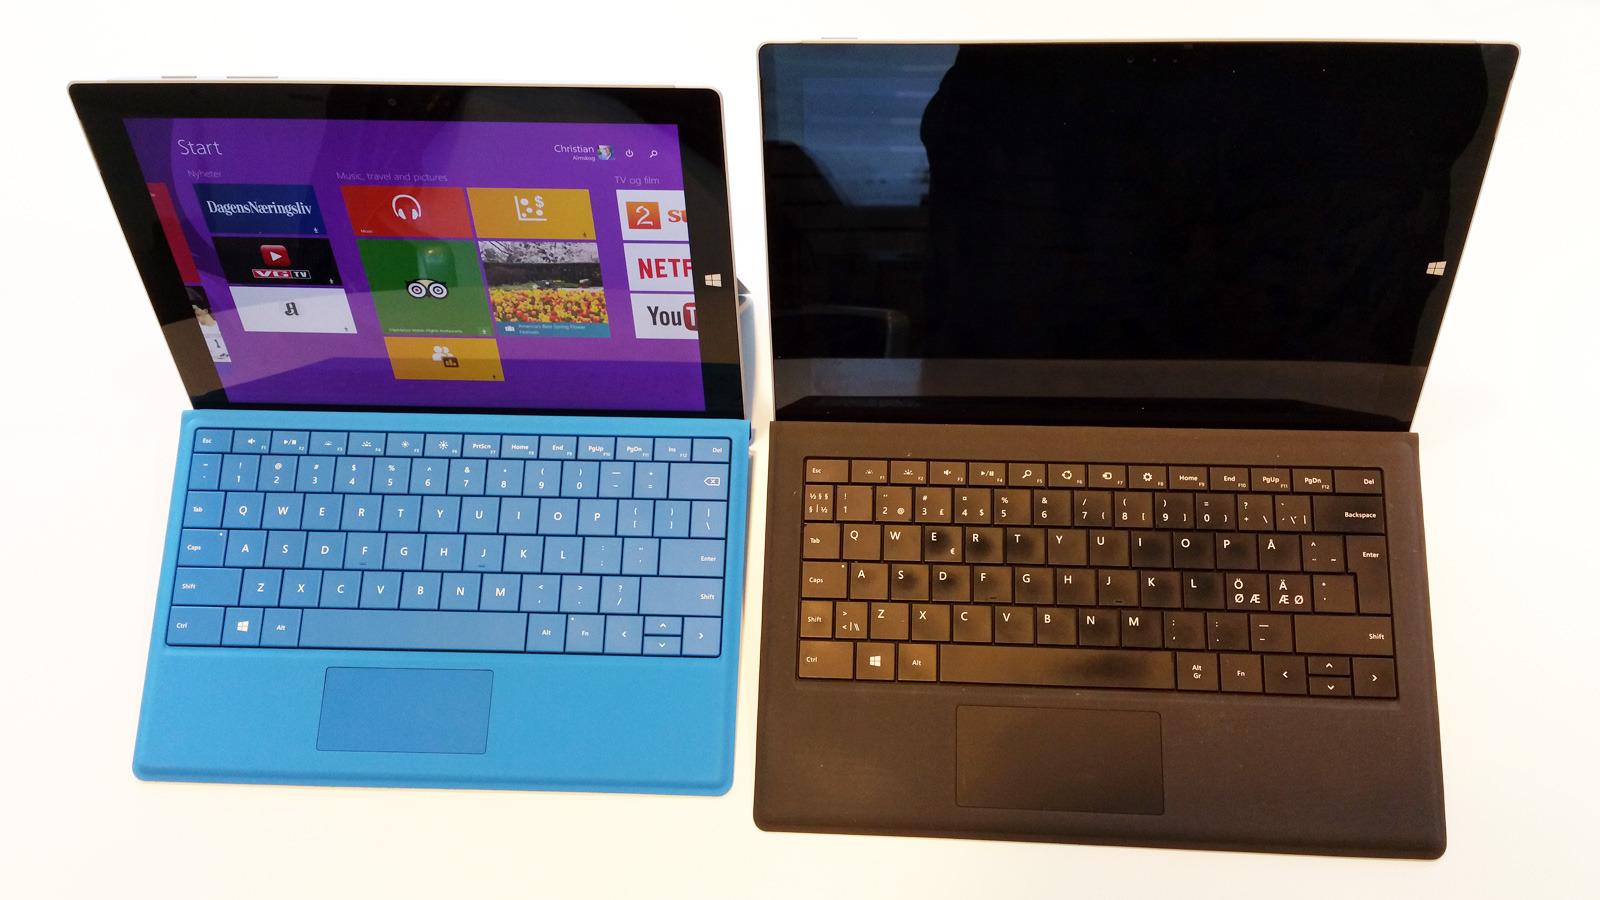 Microsoft Surface Pro 3 (til høyre) har fått en lillebror. Den er atskillig rimeligere, men kjører likevel full Windows 8.1, og har samme skjermpenn som Pro-modellen. Foto: Espen Irwing Swang, Tek.no